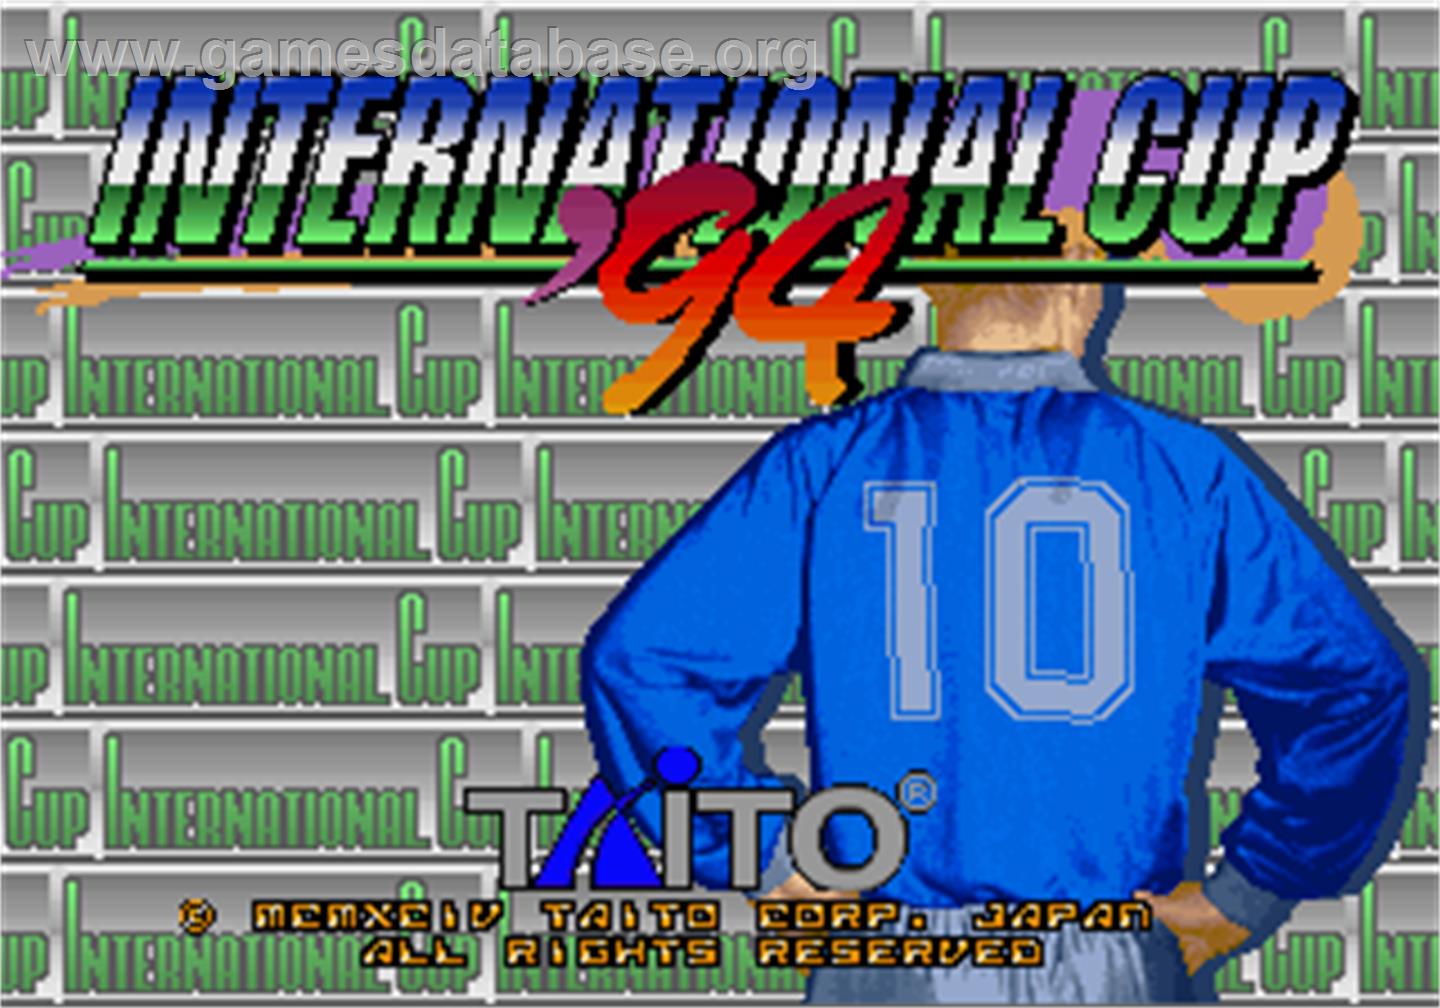 International Cup '94 - Arcade - Artwork - Title Screen